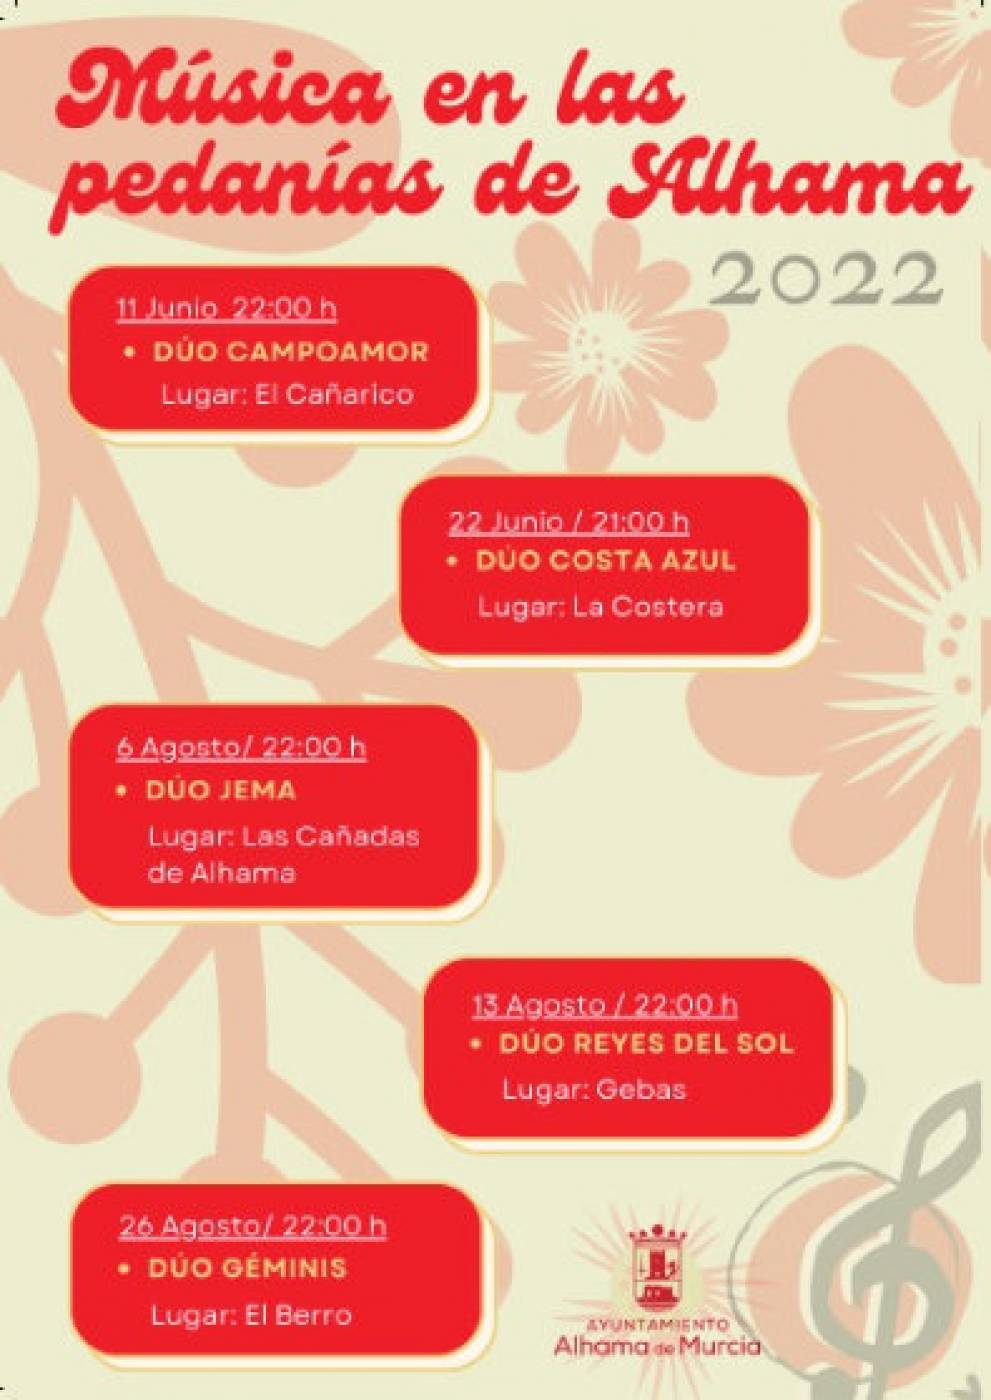 The 2022 Música en los Jardines season in Alhama de Murcia